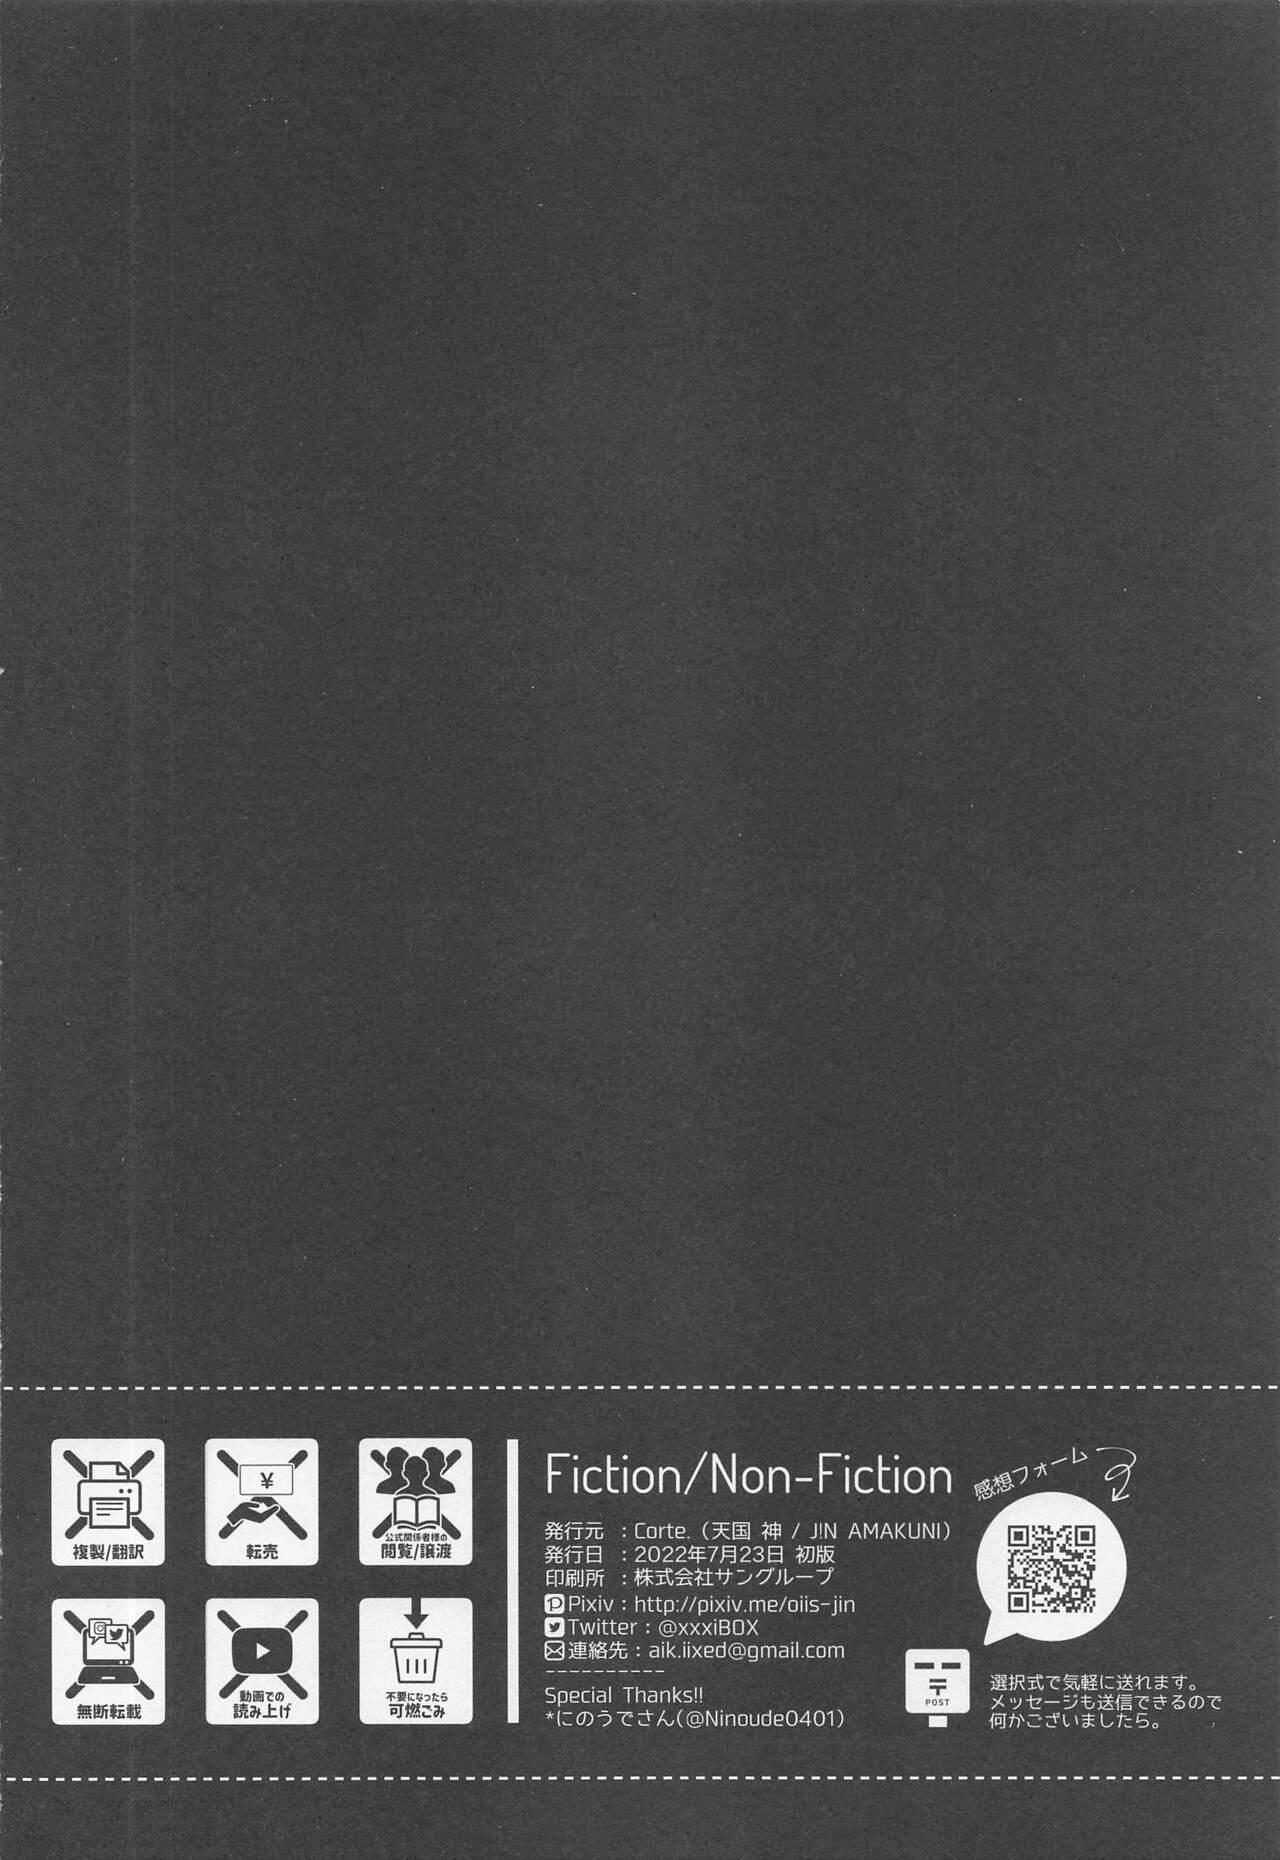 Fiction/Non-Fiction 43